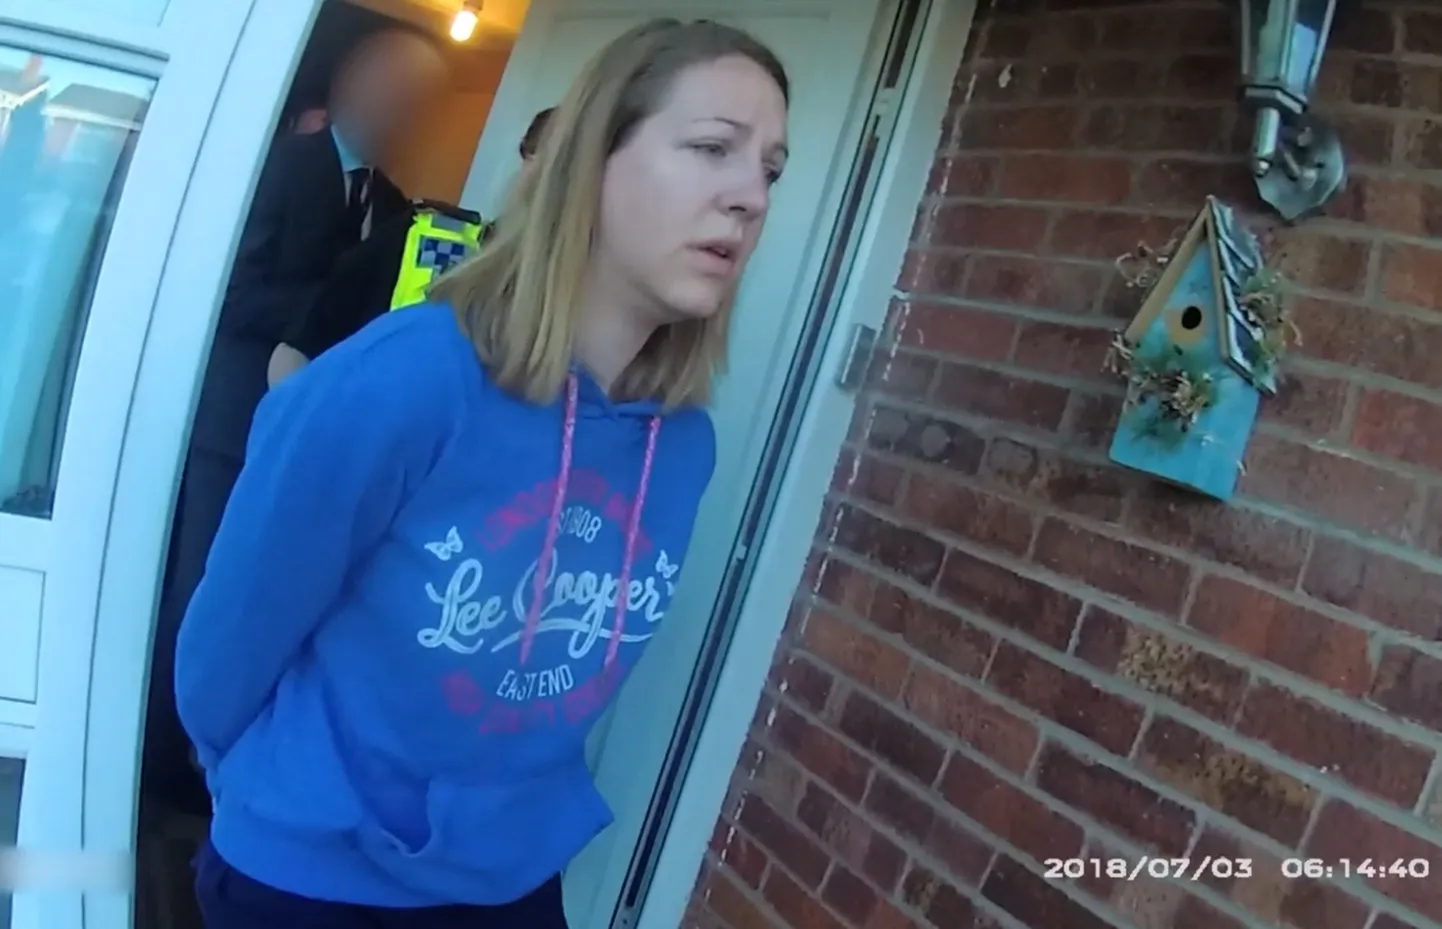 Kaader videost, millel on näha medõe Lucy Letby vahistamist 3. juulil 2018 Chesteris ta kodus